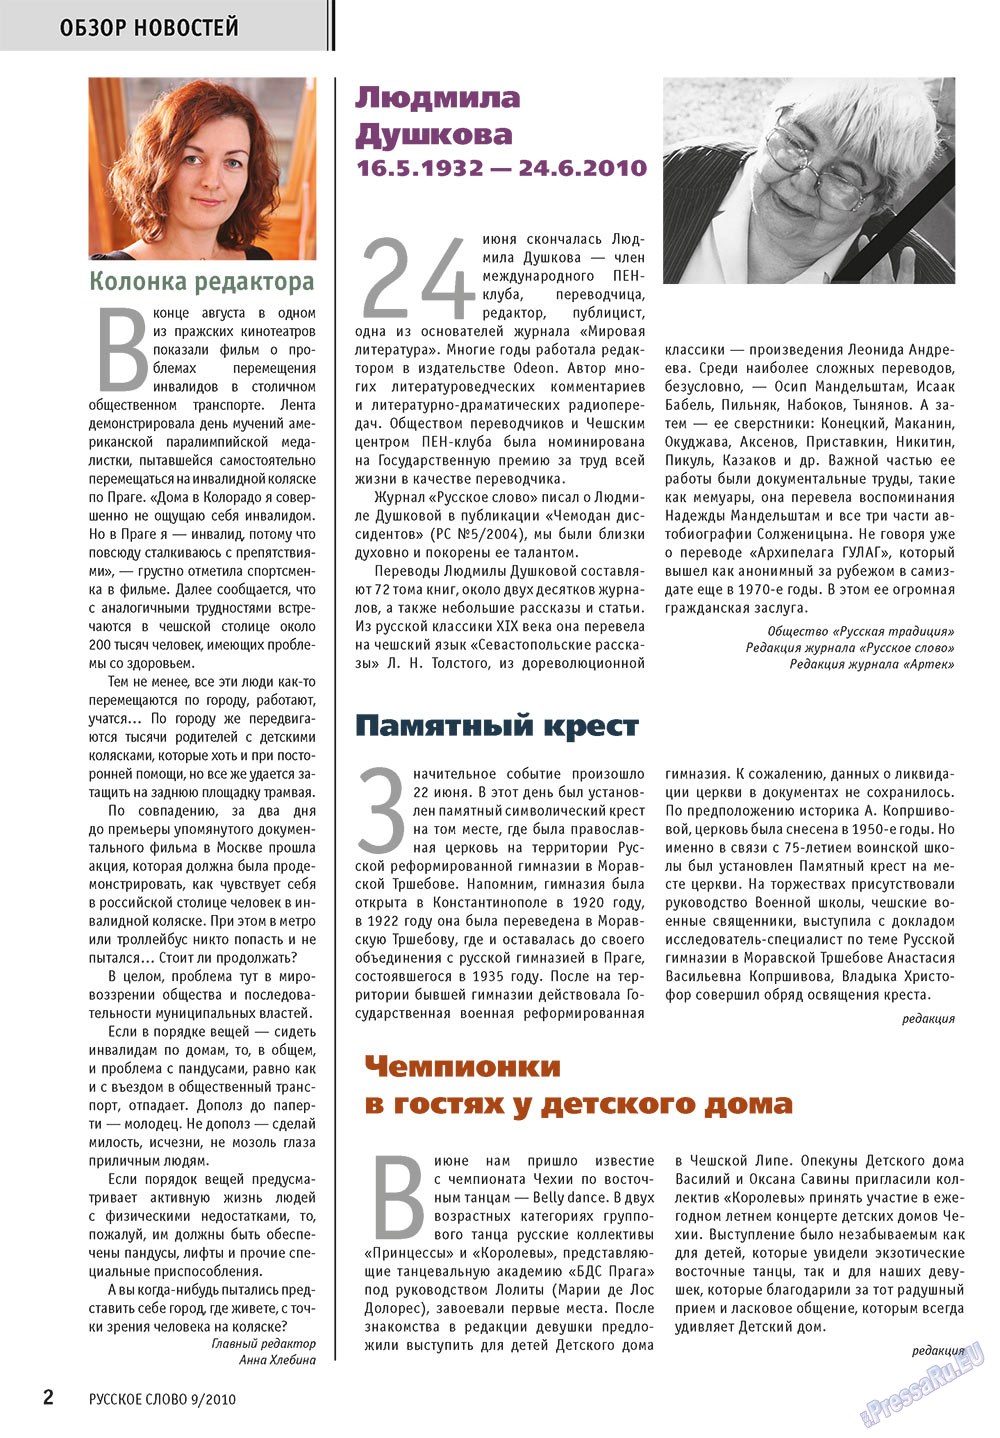 Русское слово, журнал. 2010 №9 стр.4